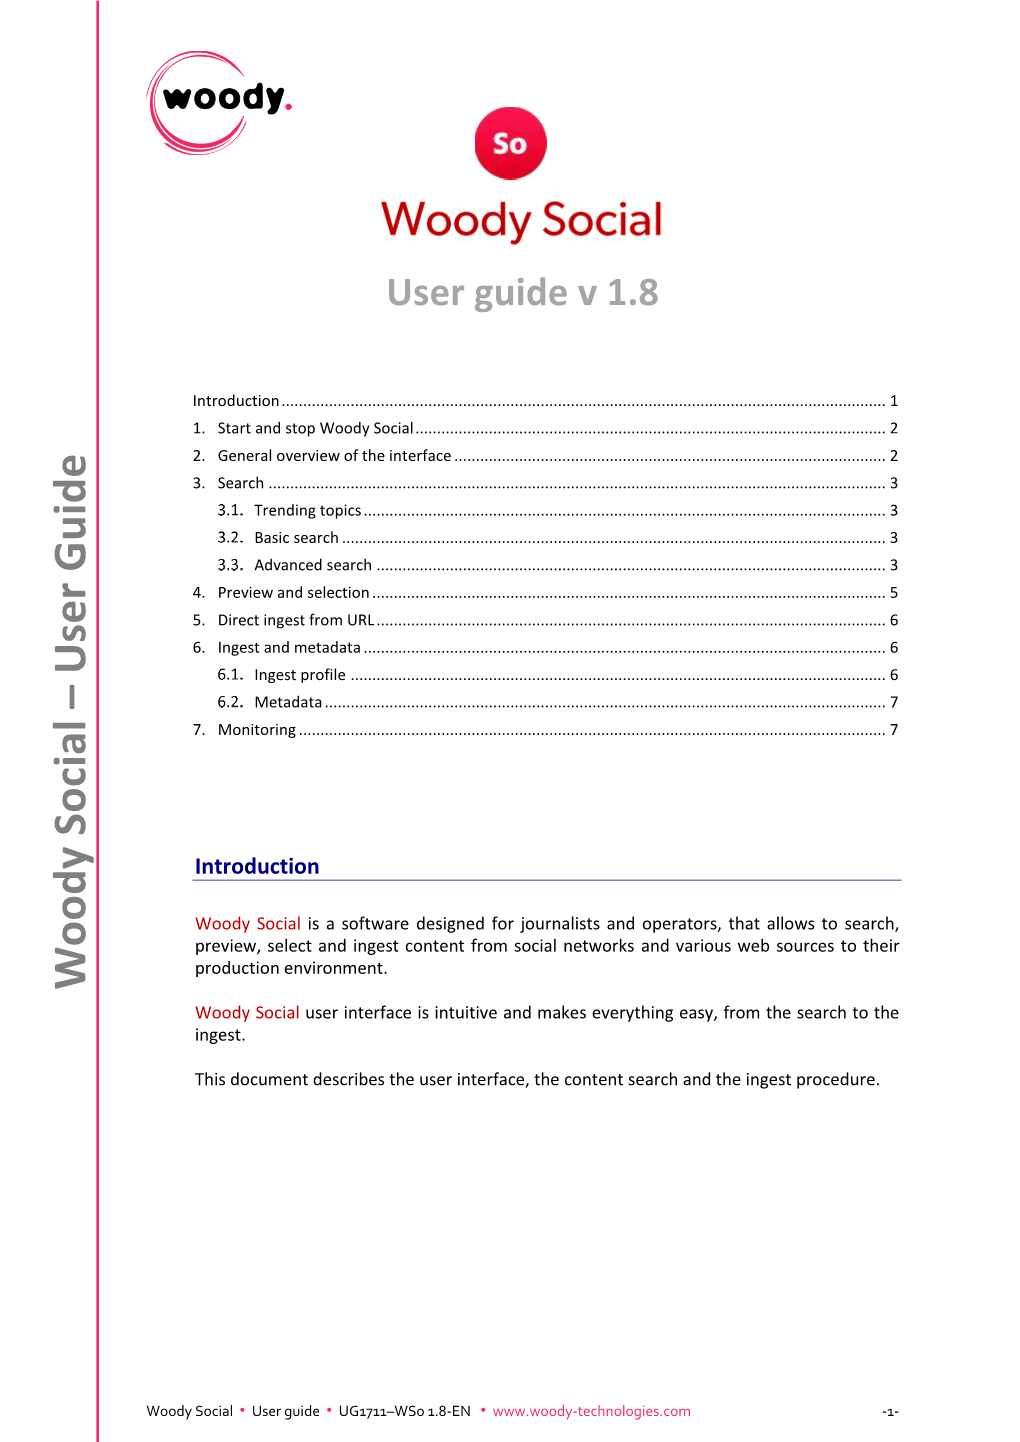 Woody Social User Guide